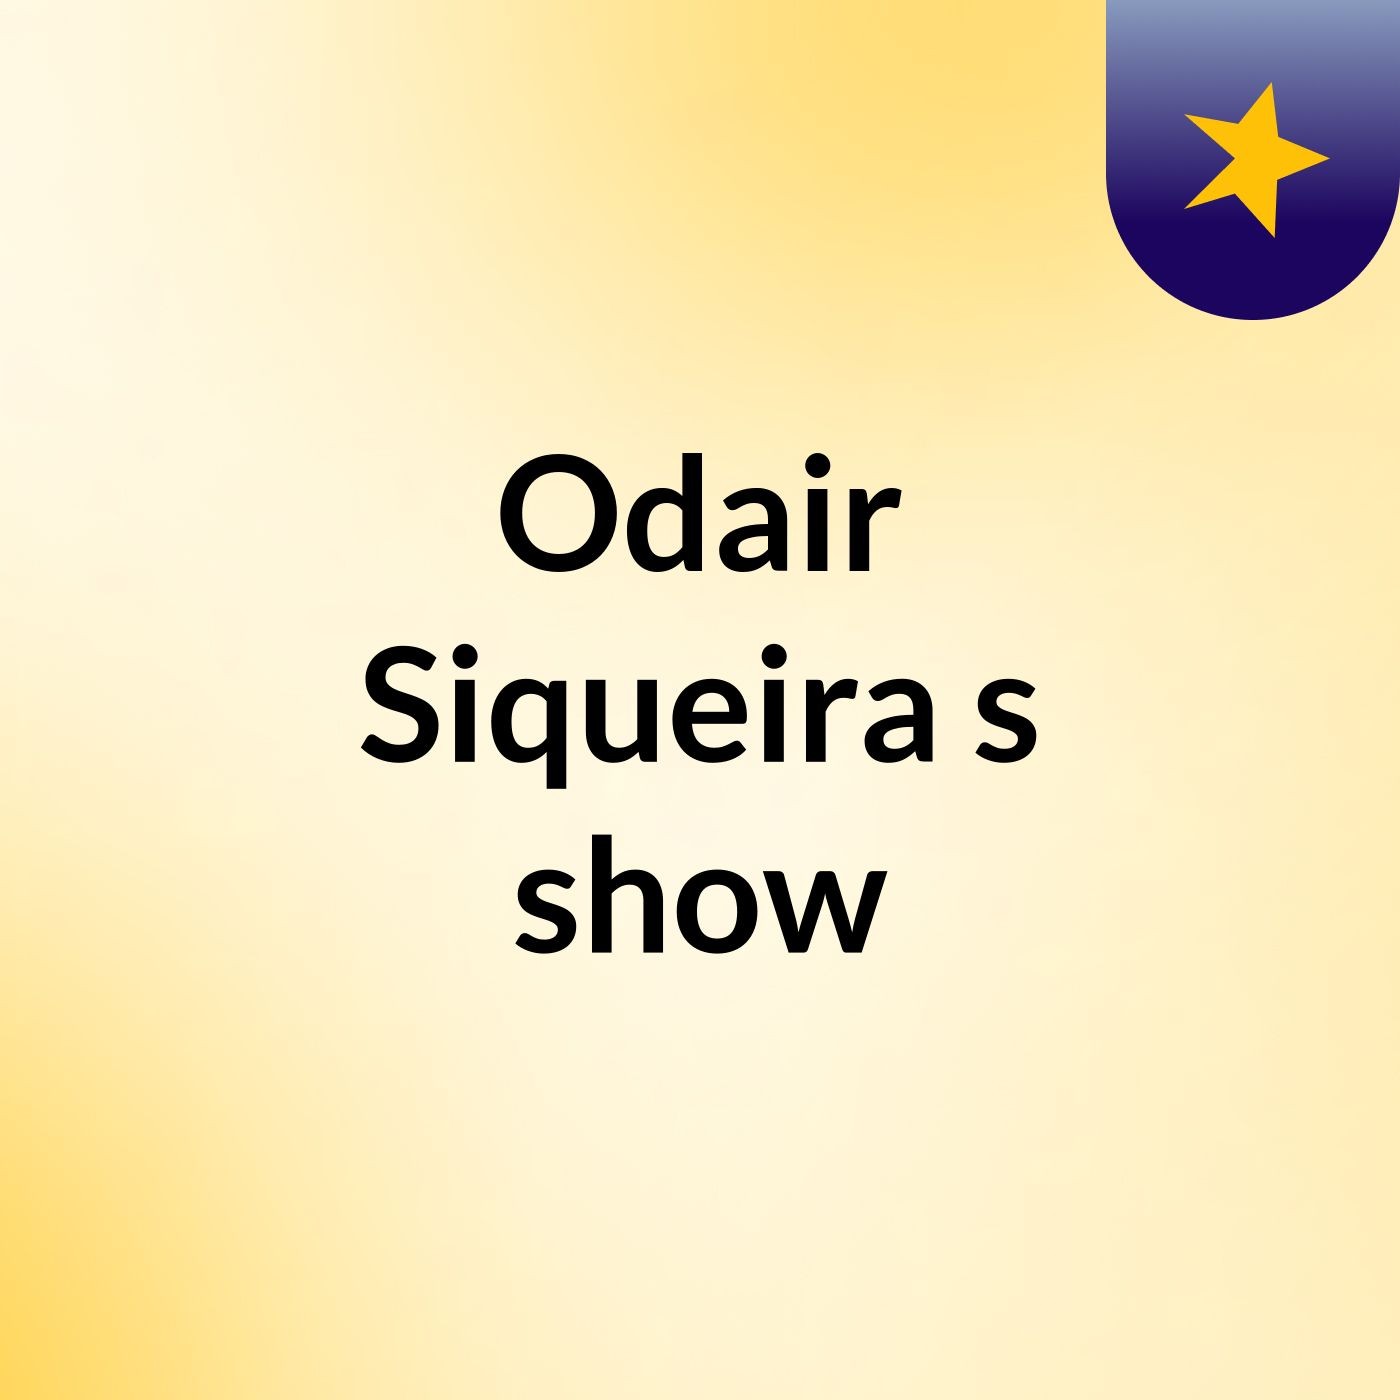 Odair Siqueira's show